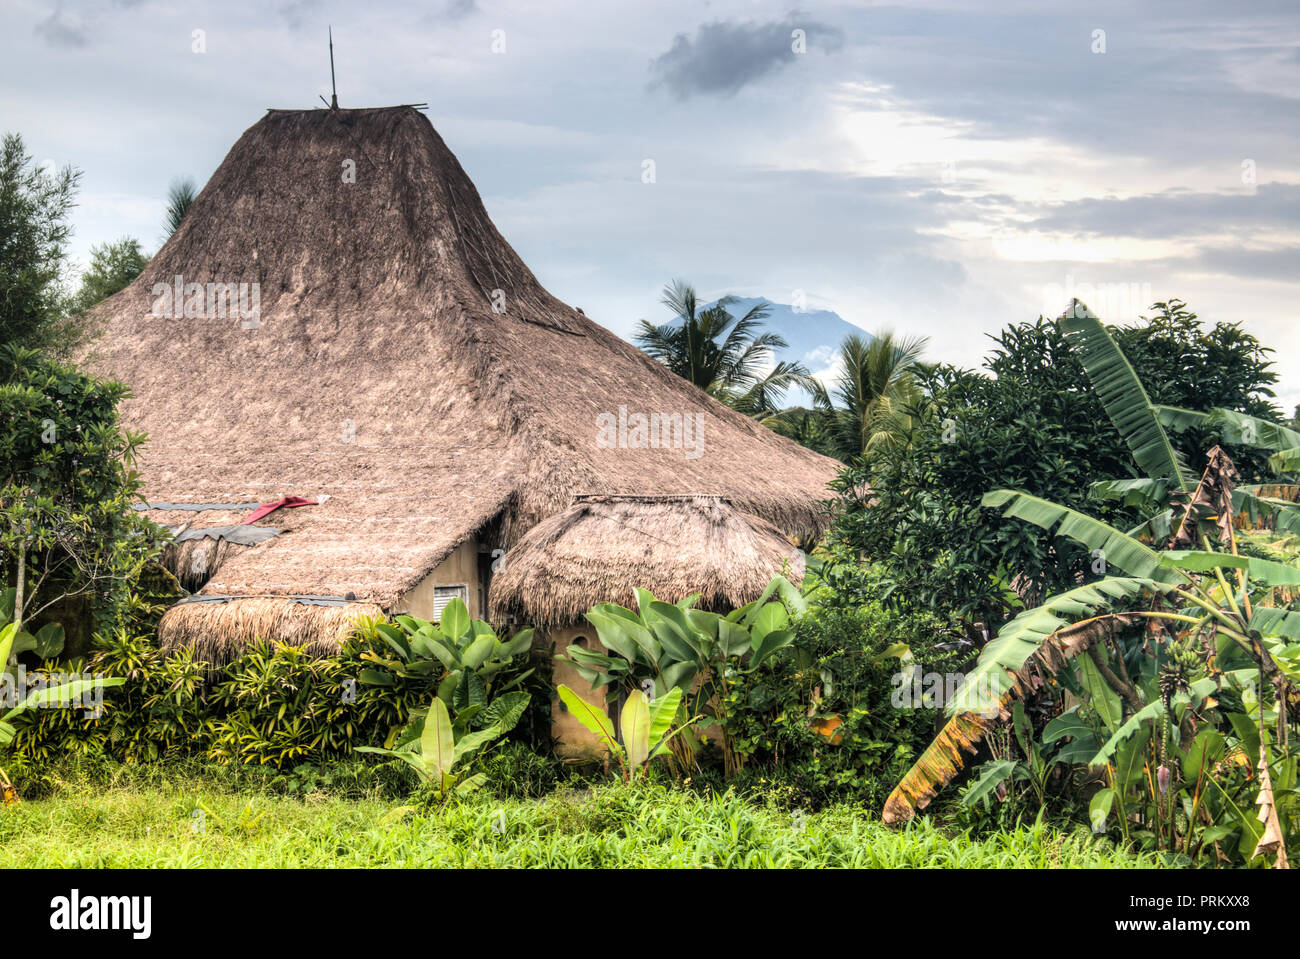 Paesaggio con molti campi di riso vicino alla città di Ubud a Bali, Indonesia Foto Stock